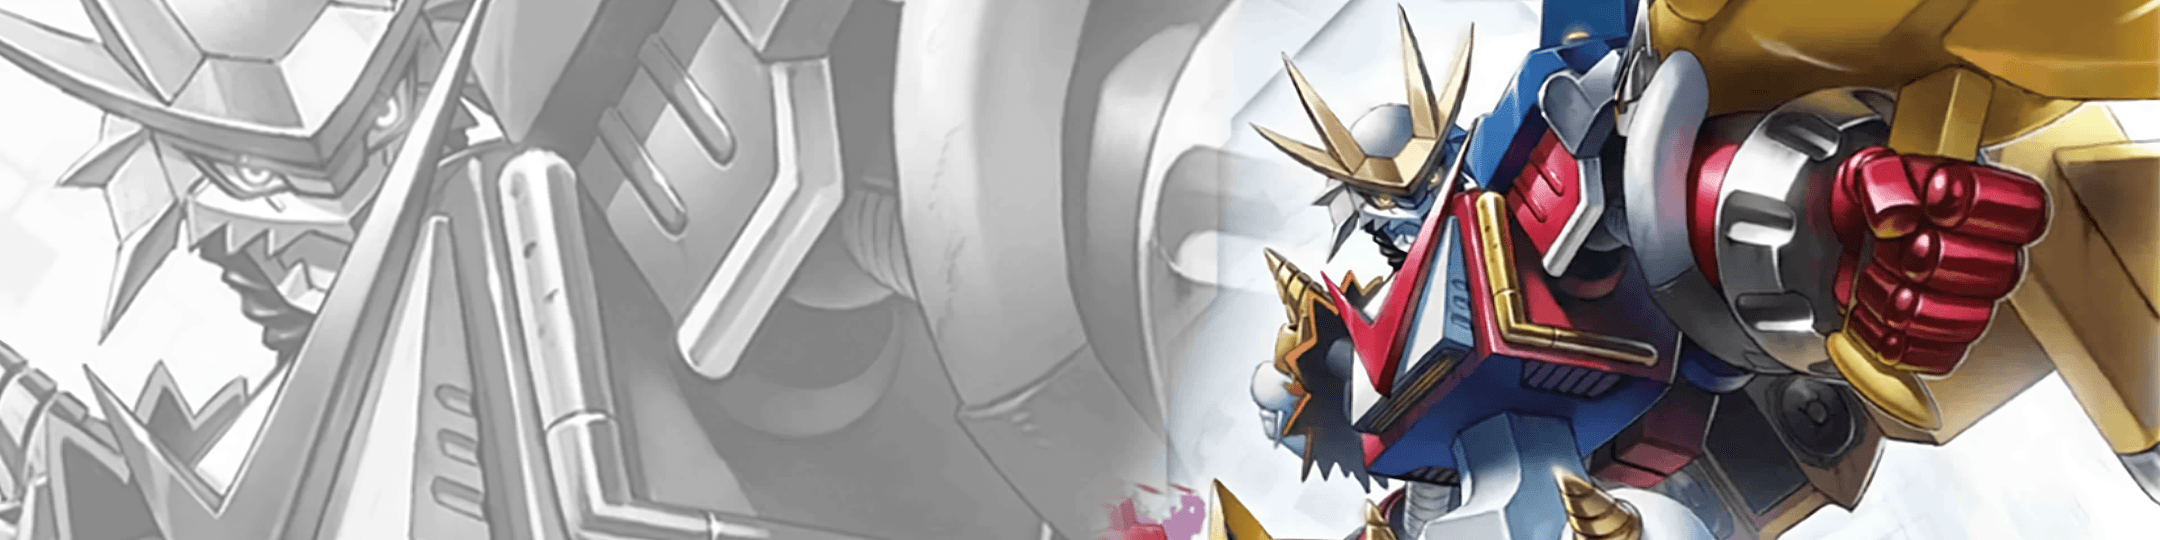 Digimon TCG | Xros Encounter (BT10) - The Card Vault